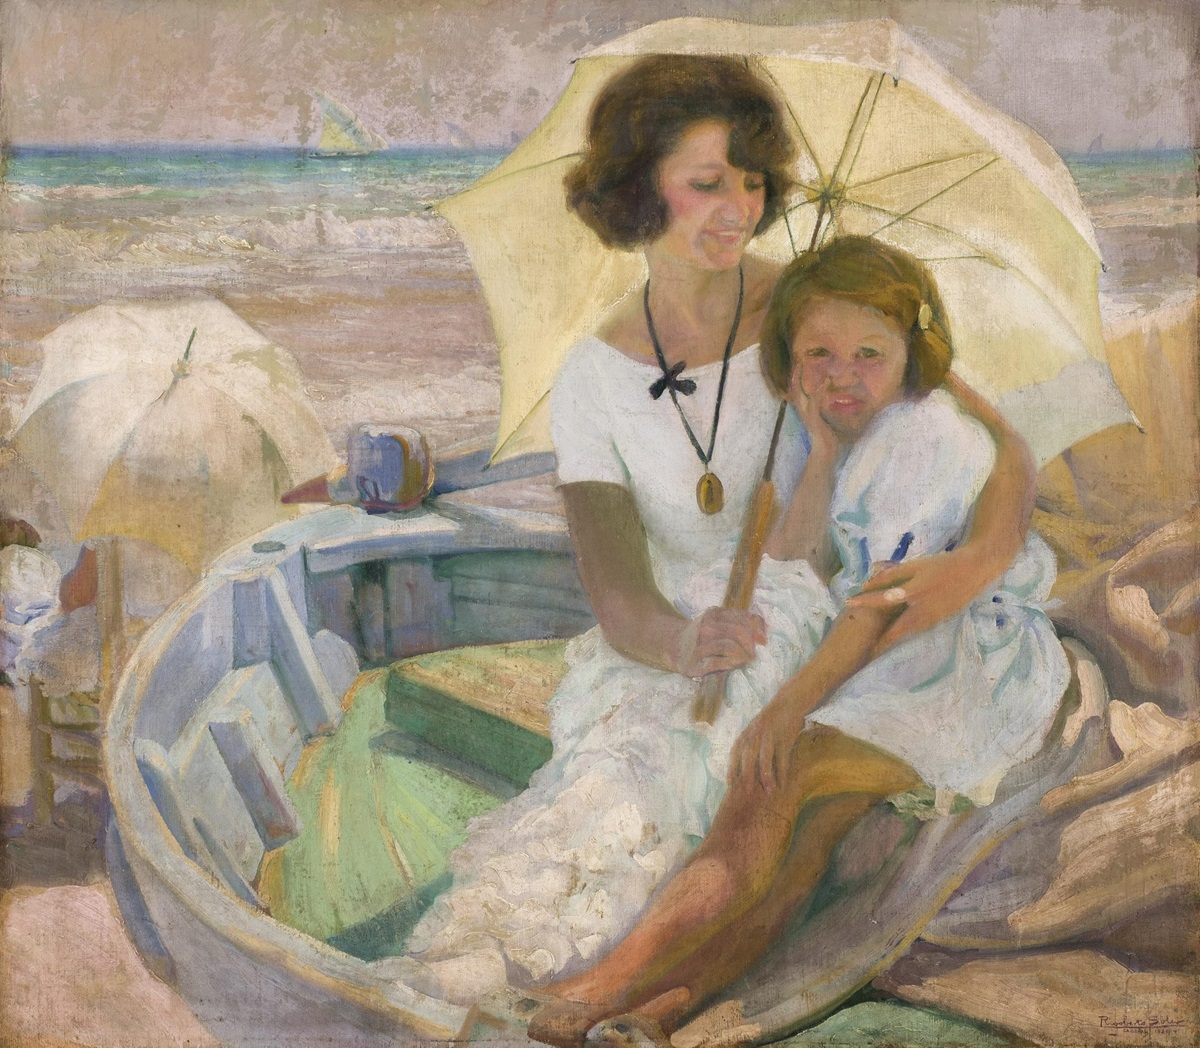 Rigoberto Soler, Madre e hija en El Cabañal, 1924. Salida: 12.000 euros. Remate: 15.000 euros